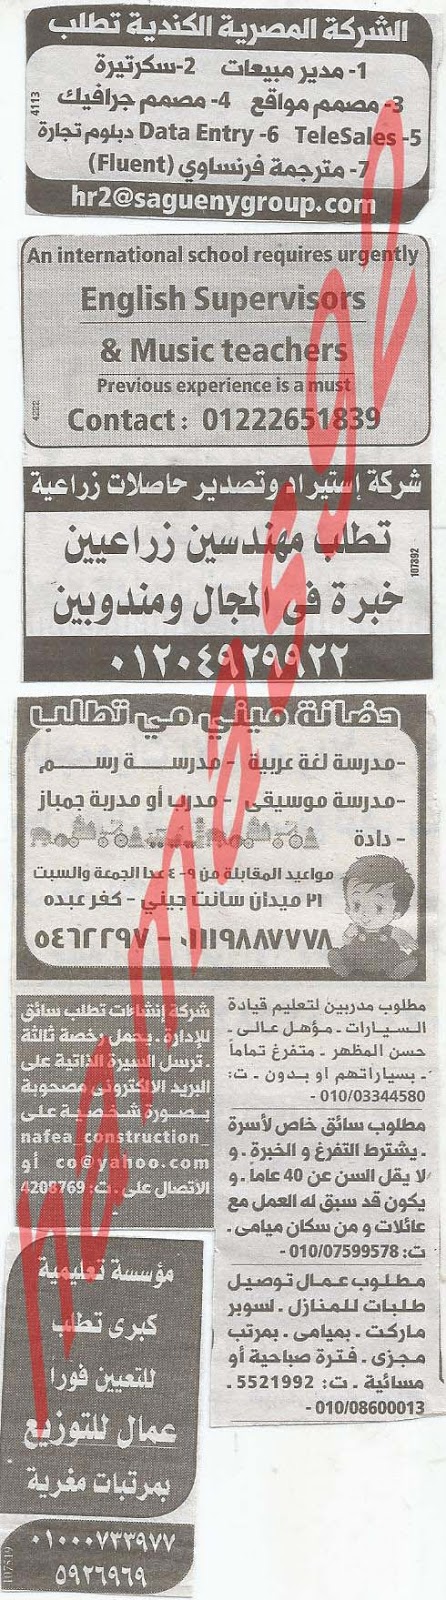 وظائف شاغرة من جريدة الوسيط الاسكندرية - مصر الاثنين 18/2/2013 %D9%88+%D8%B3+%D8%B3+7